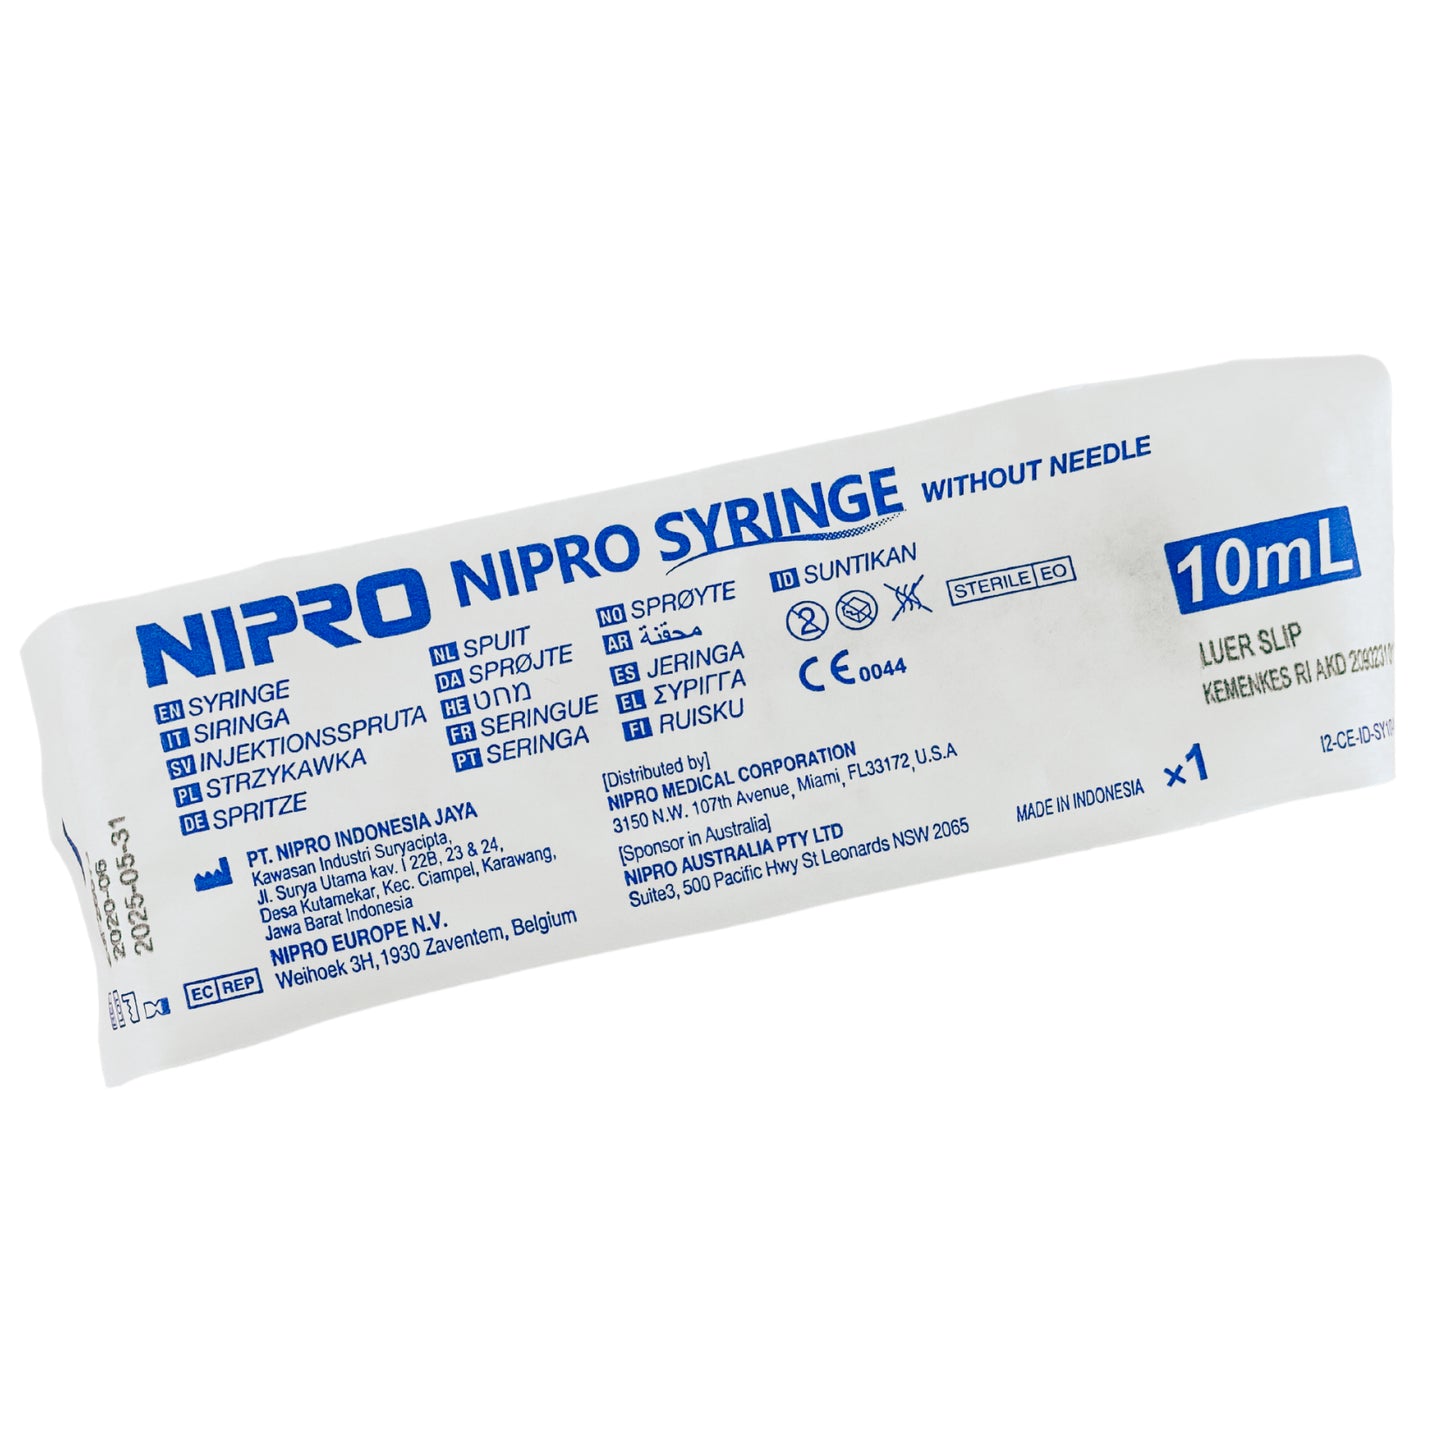 Nipro Syringe Luer Slip (1)